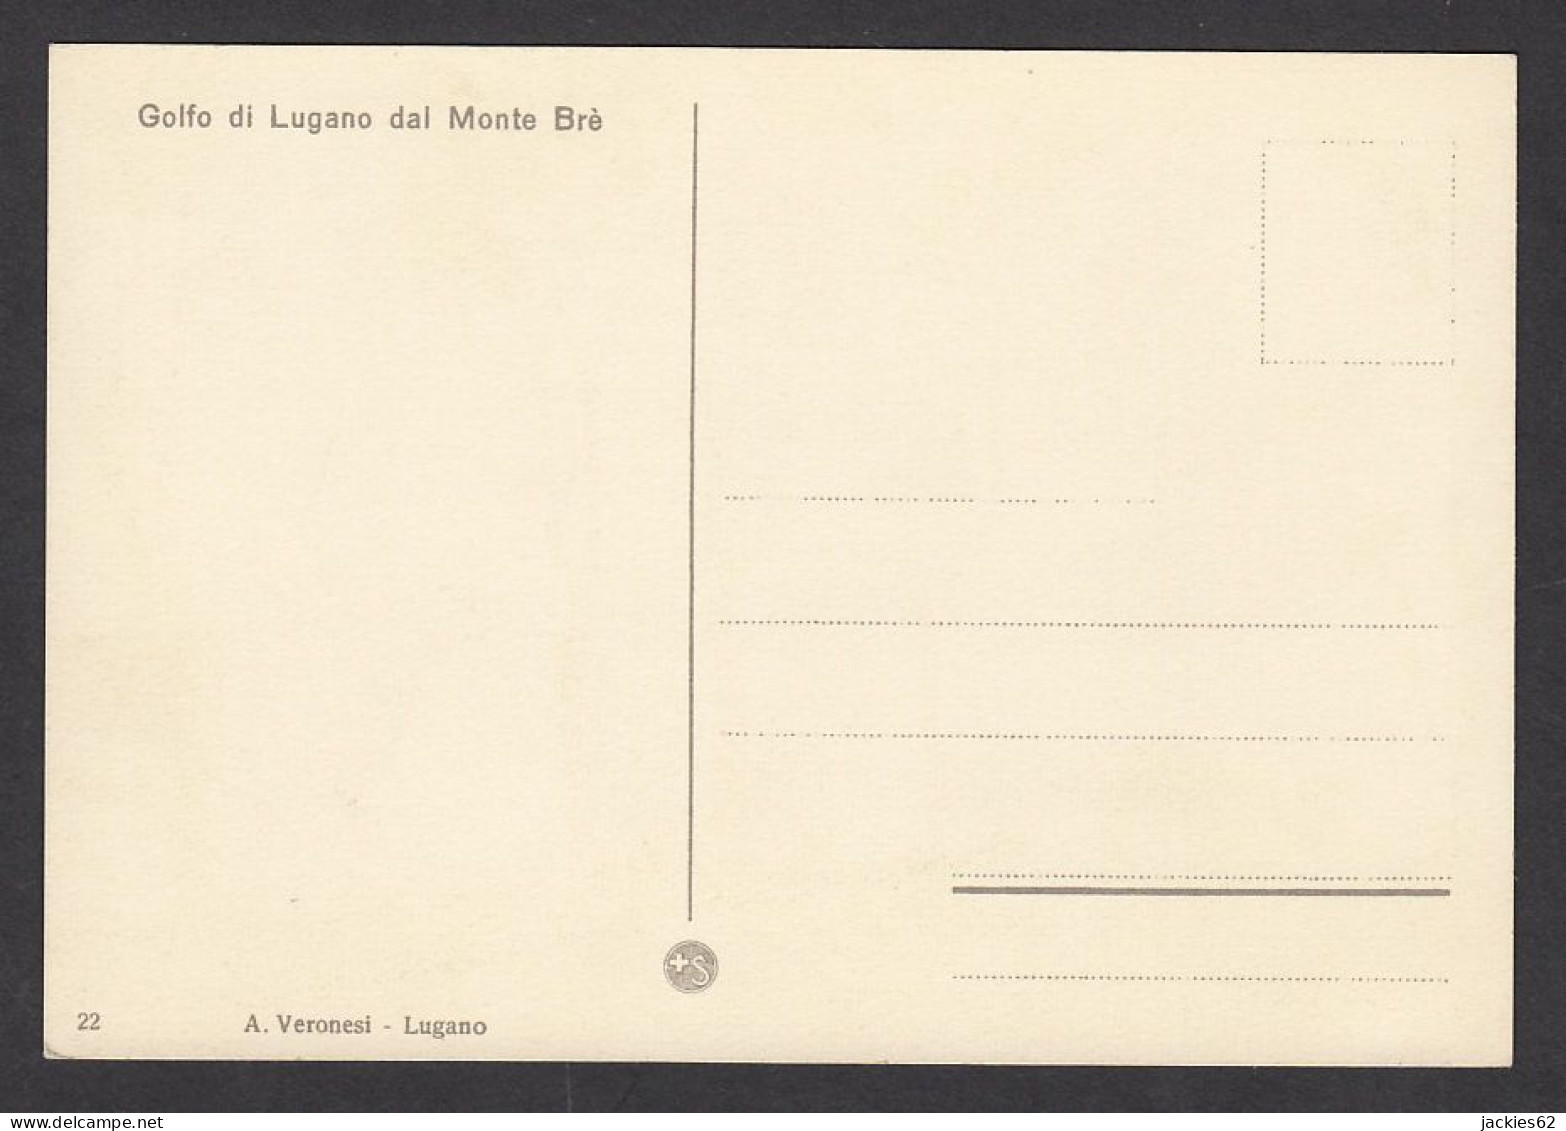 117185/ *Golfo Di Lugano Dal Monte Brè*, Ed A. Veronesi N° 22 - Contemporary (from 1950)